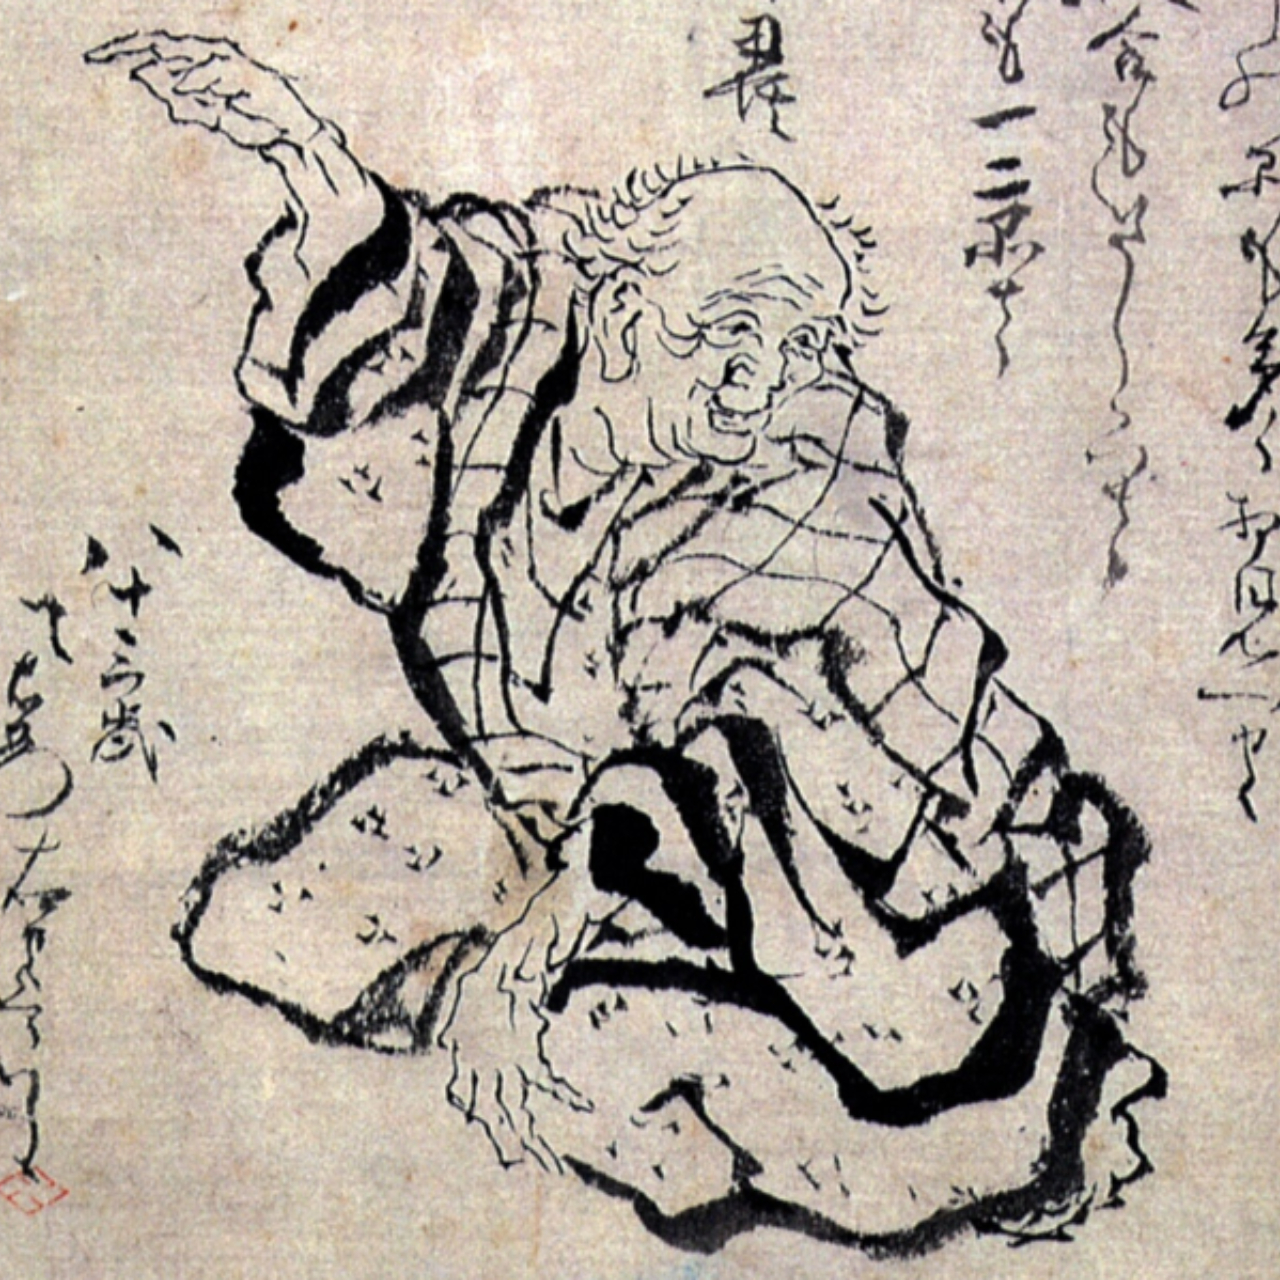 Autorretrato de Hokusai, aos 83 anos de idade